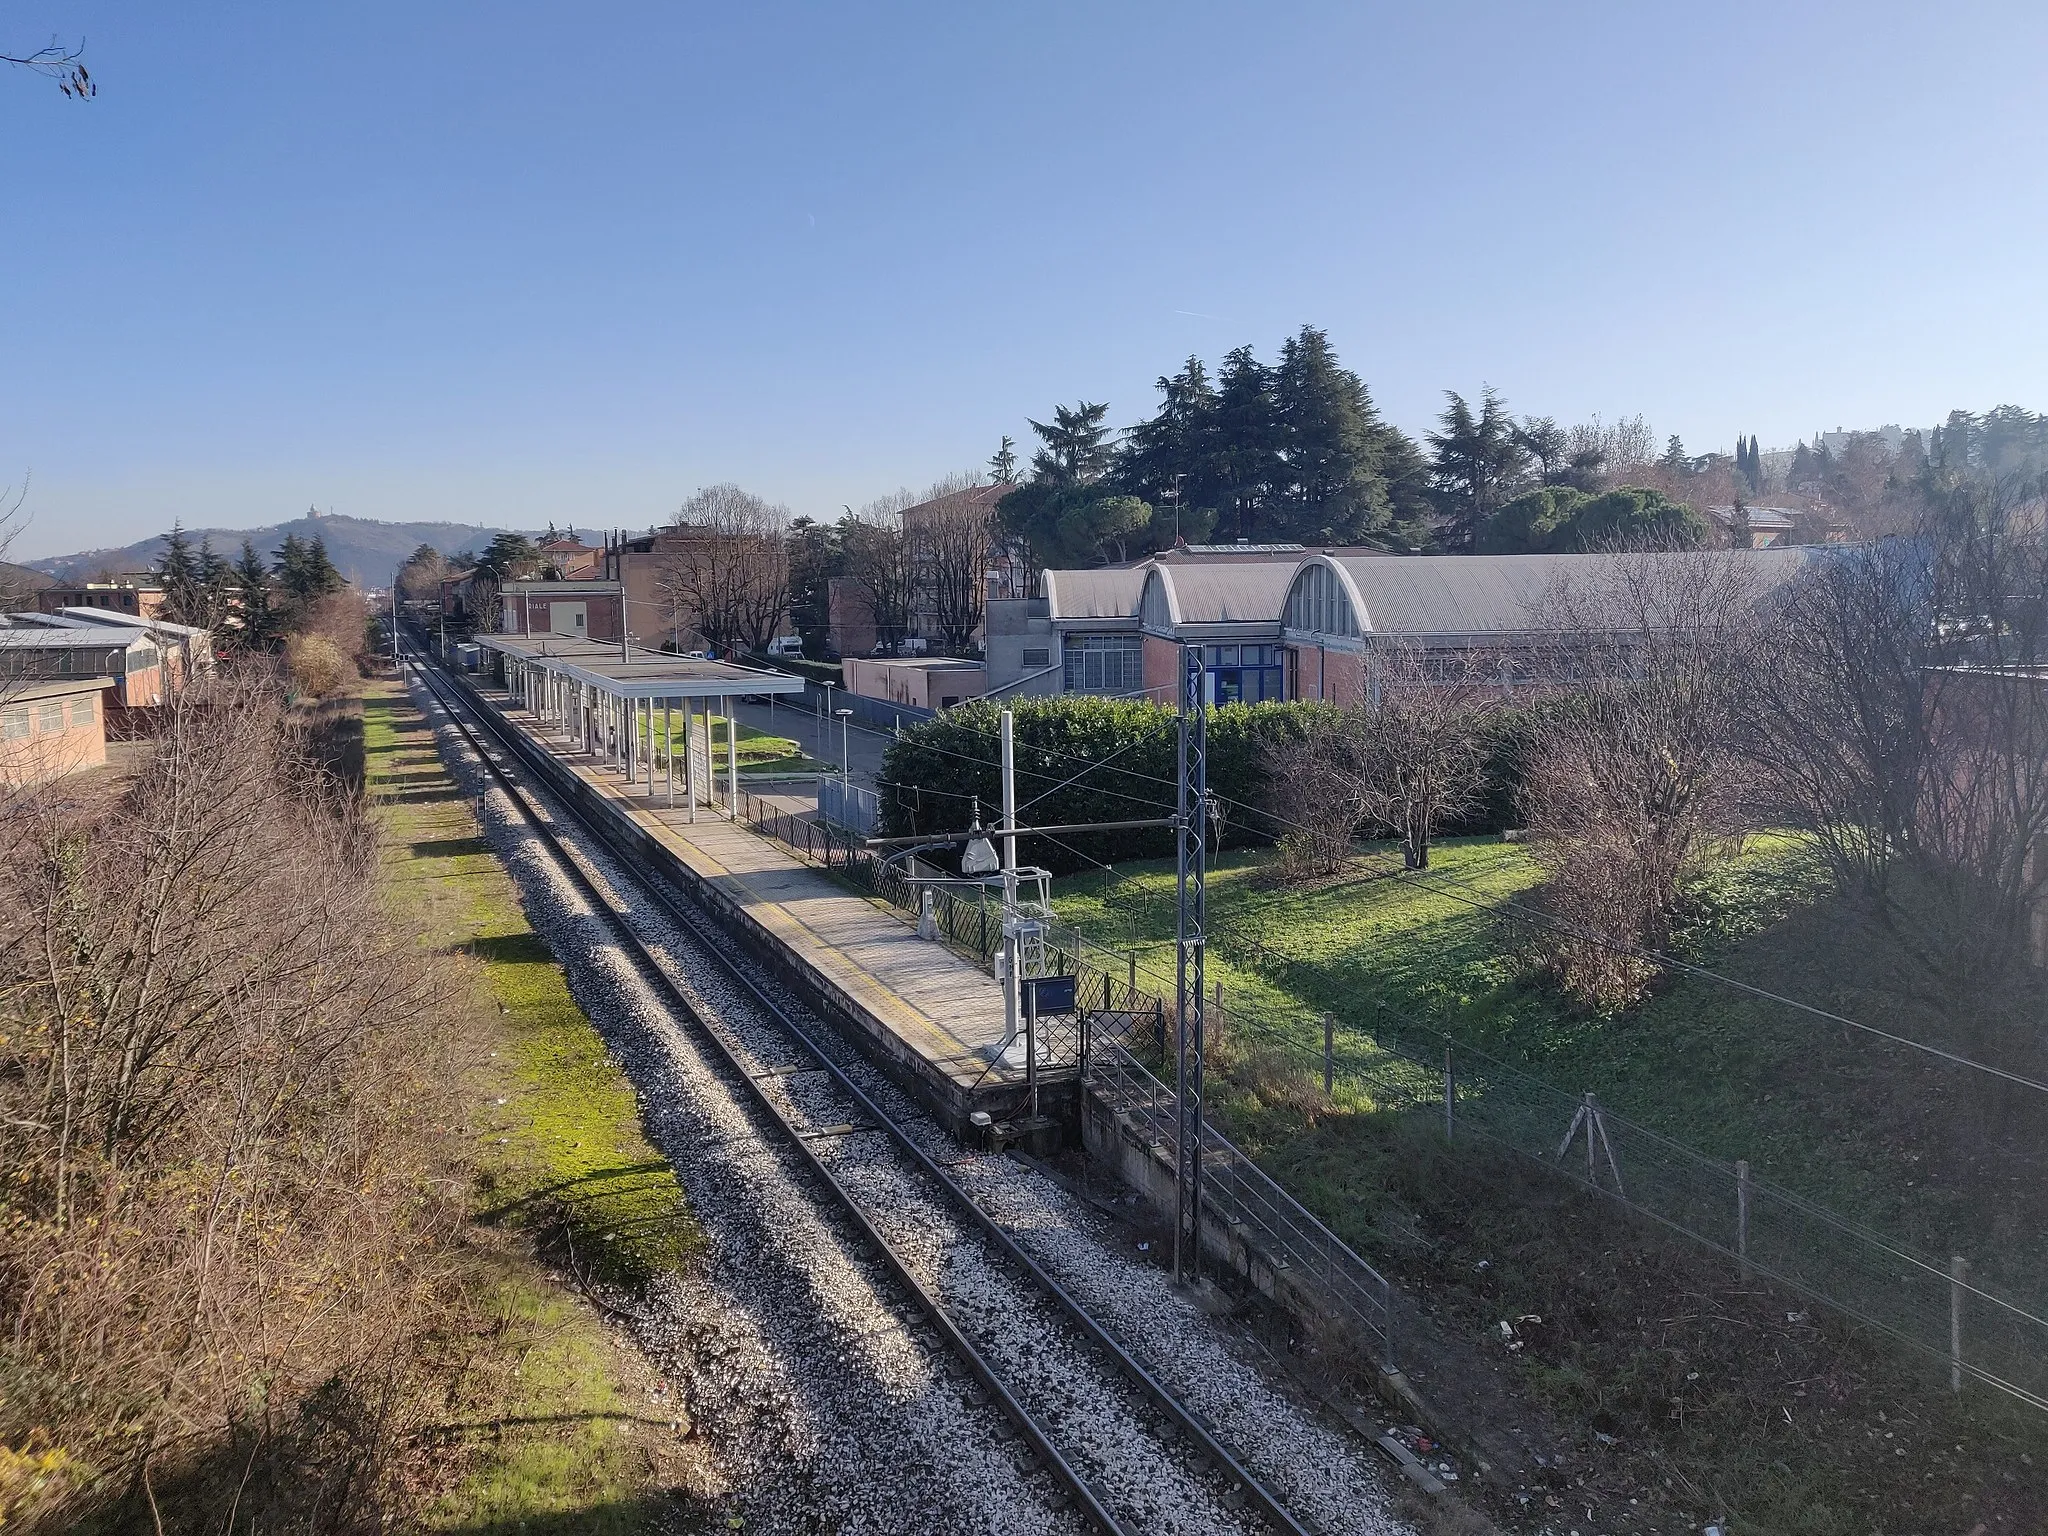 Photo showing: Stazione ferroviaria di Riale.